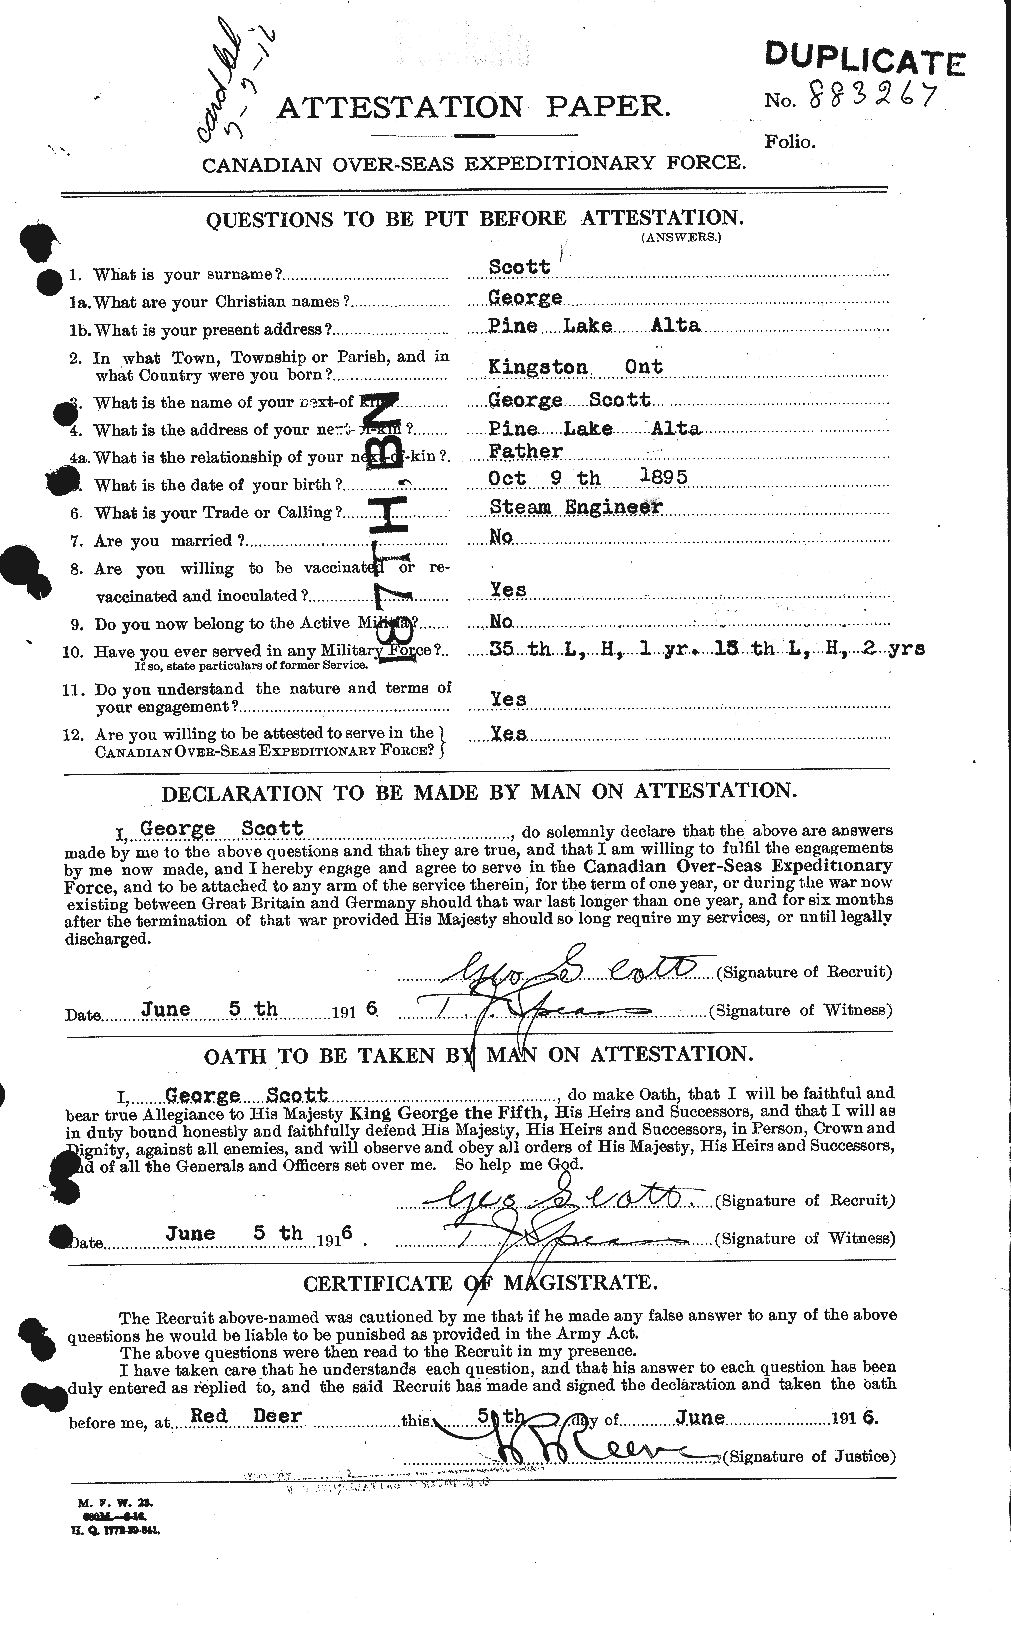 Dossiers du Personnel de la Première Guerre mondiale - CEC 084348a